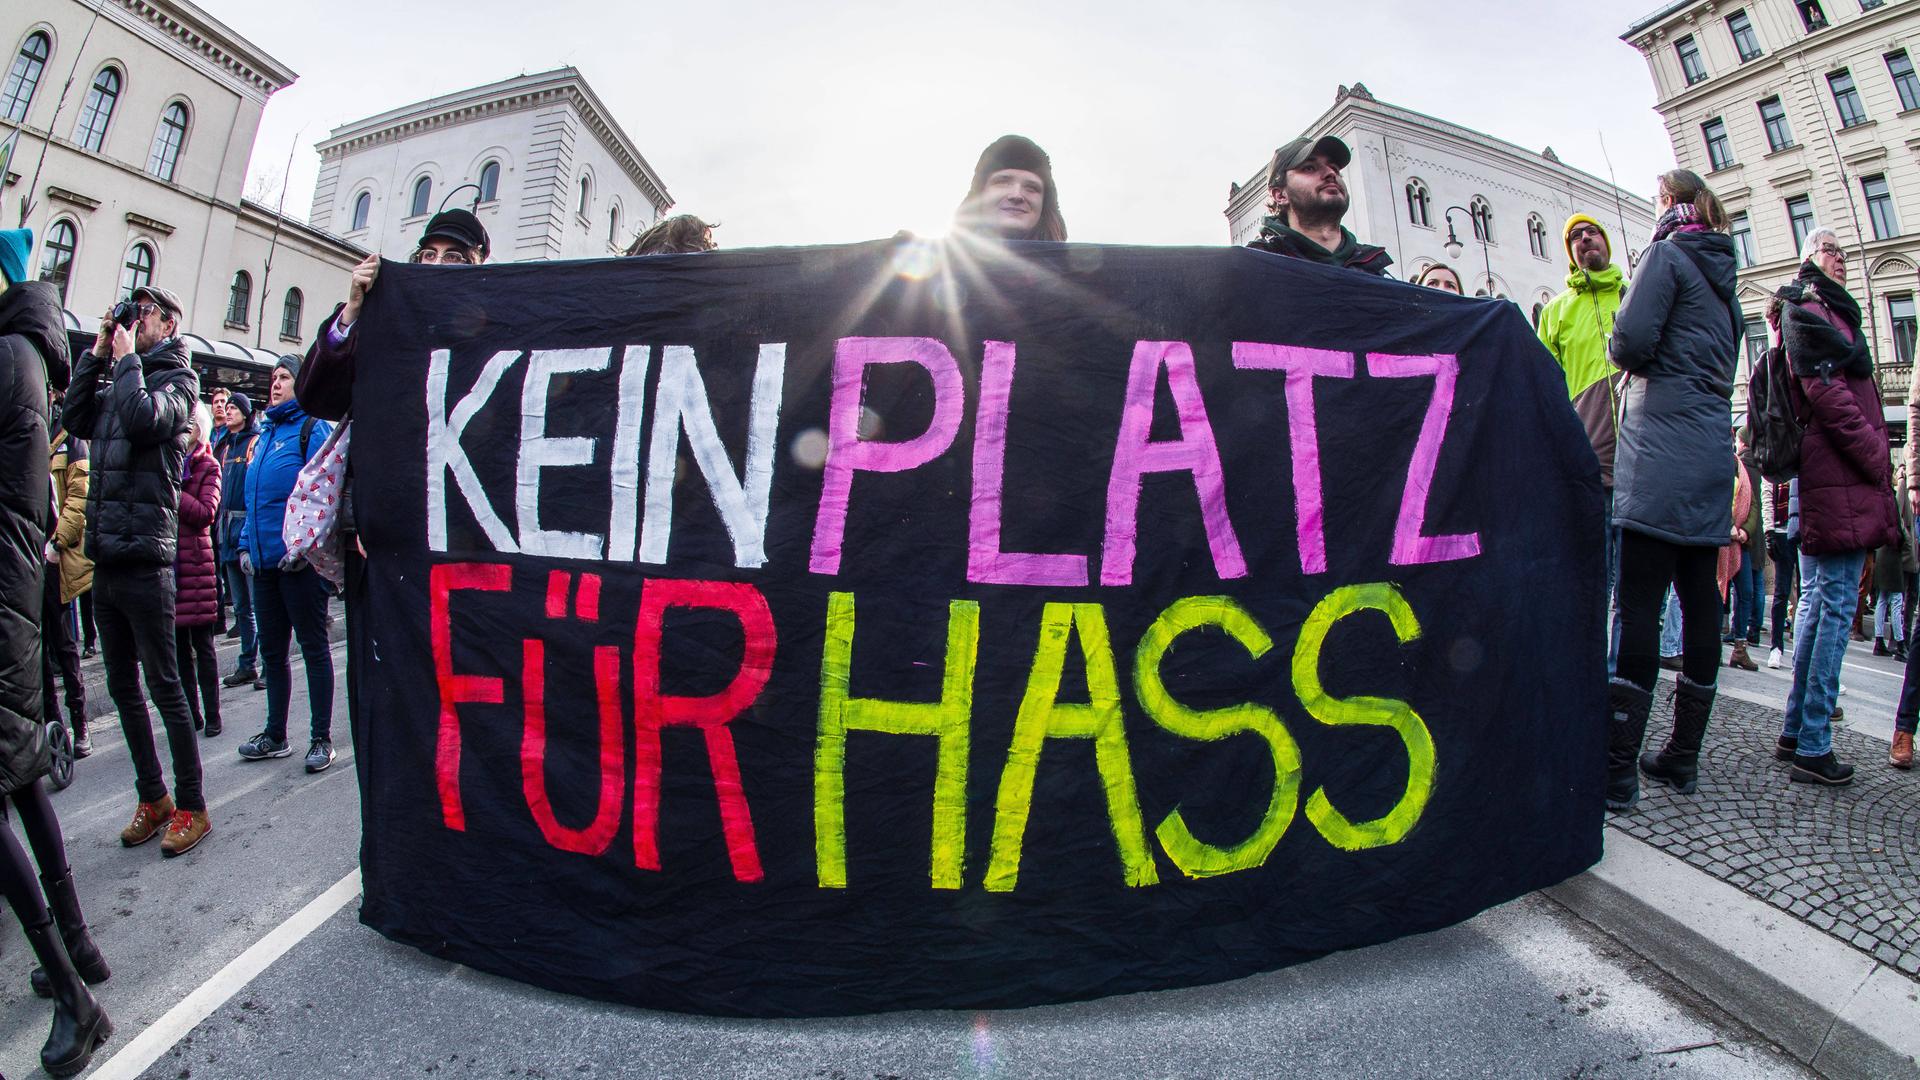 Ein Plakat auf einer Demo für die Demokratie in München wird gezeigt. Auf schwarzen Hintergrund steht in großen, bunten Lettern "KEIN PLATZ FÜR HASS".